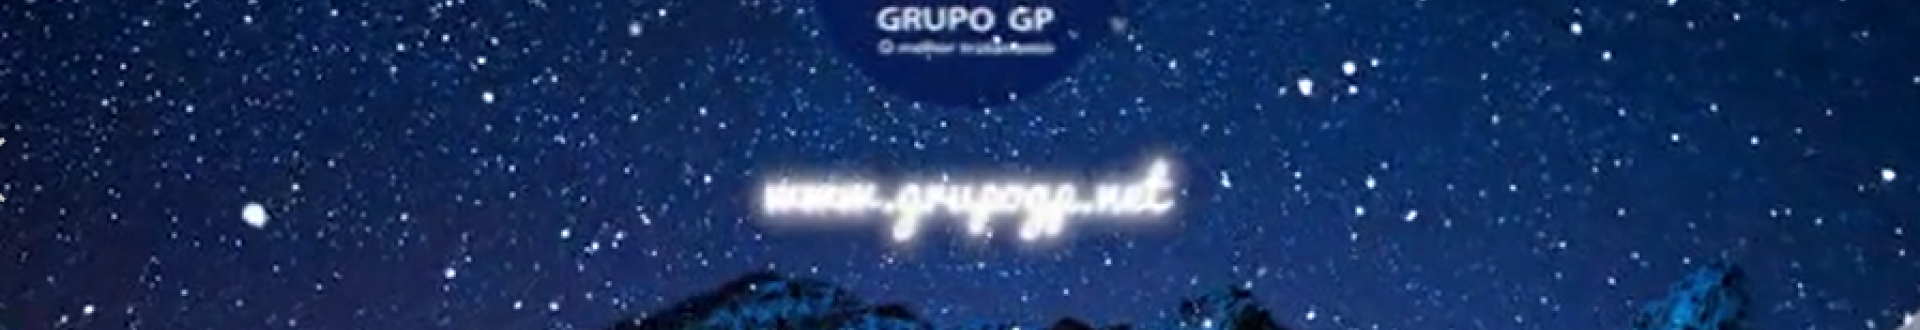 O GRUPO GP deseja um Feliz Natal e um Próspero Ano Novo!